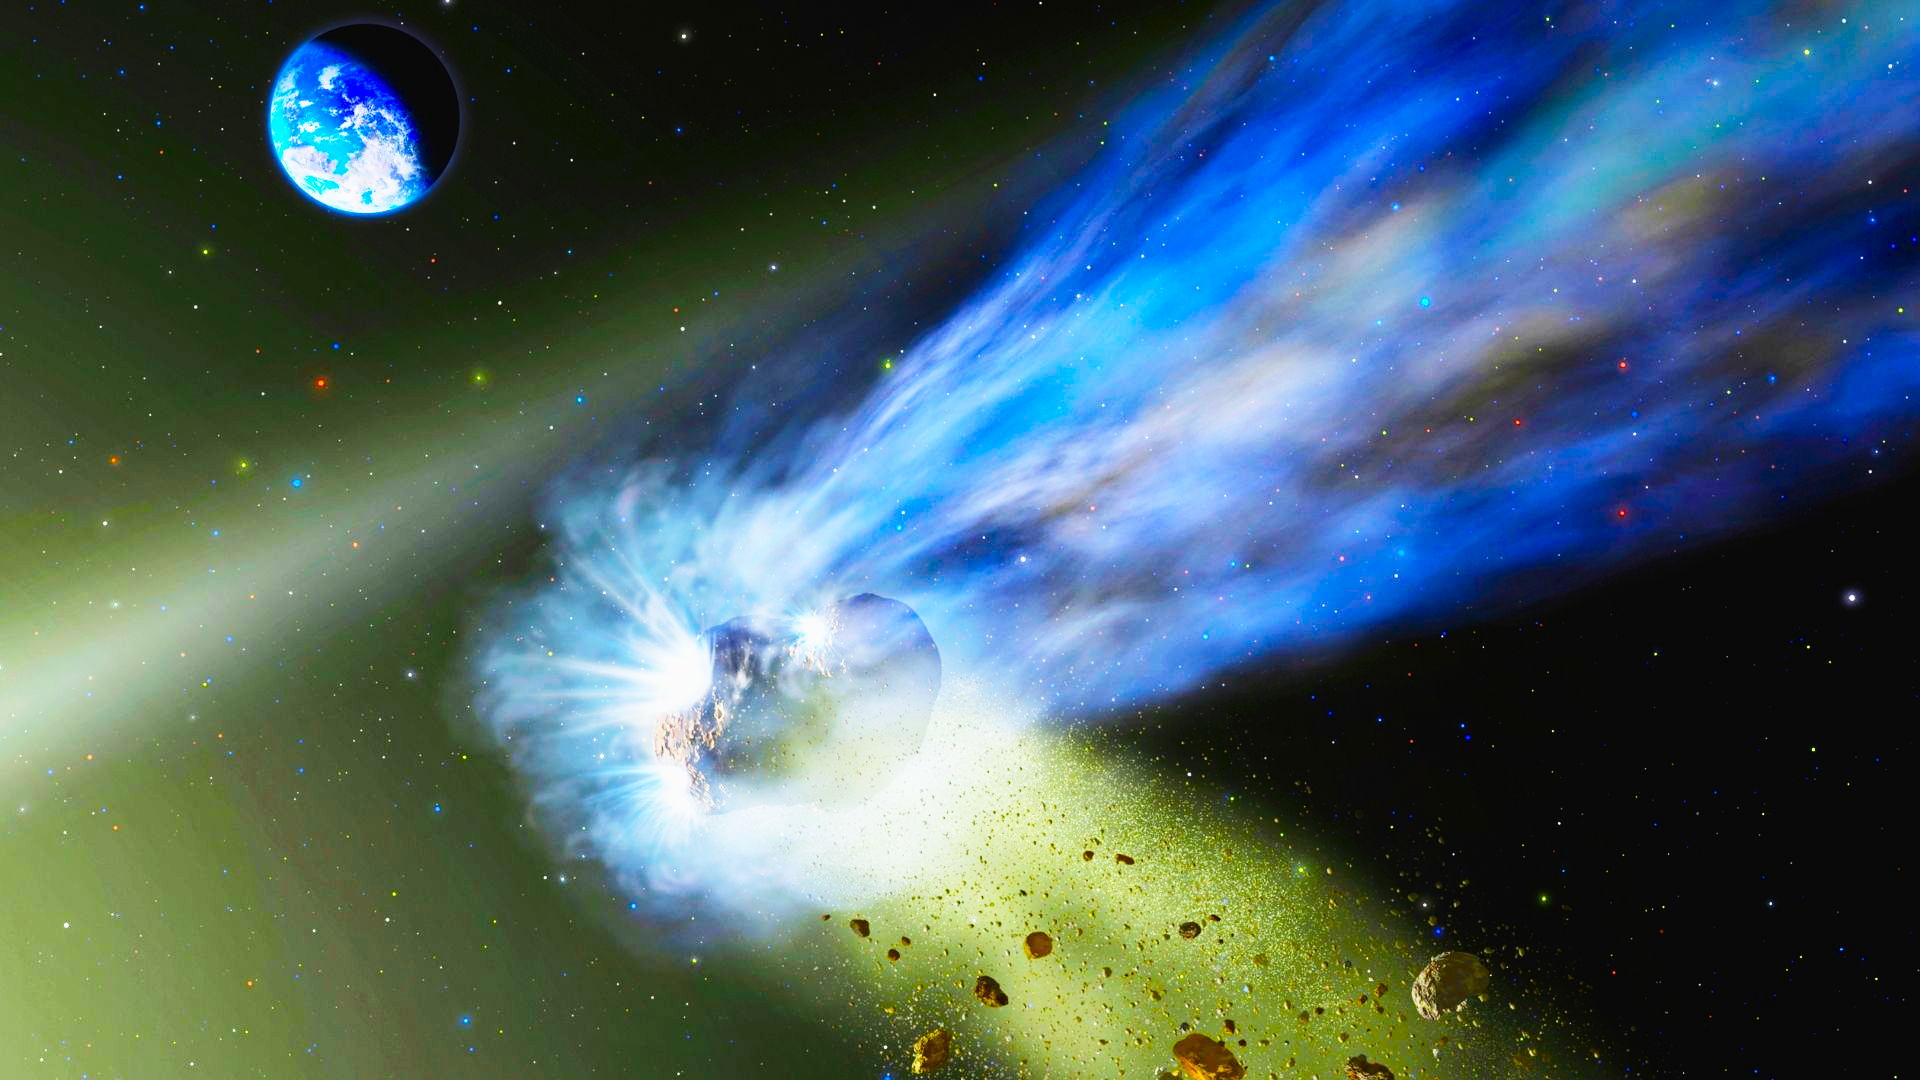 Sao chổi có thể tiết lộ bí mật tìm kiếm sự sống ngoài vũ trụ. (Ảnh: NASA /SOFIA /Lynette Cook)